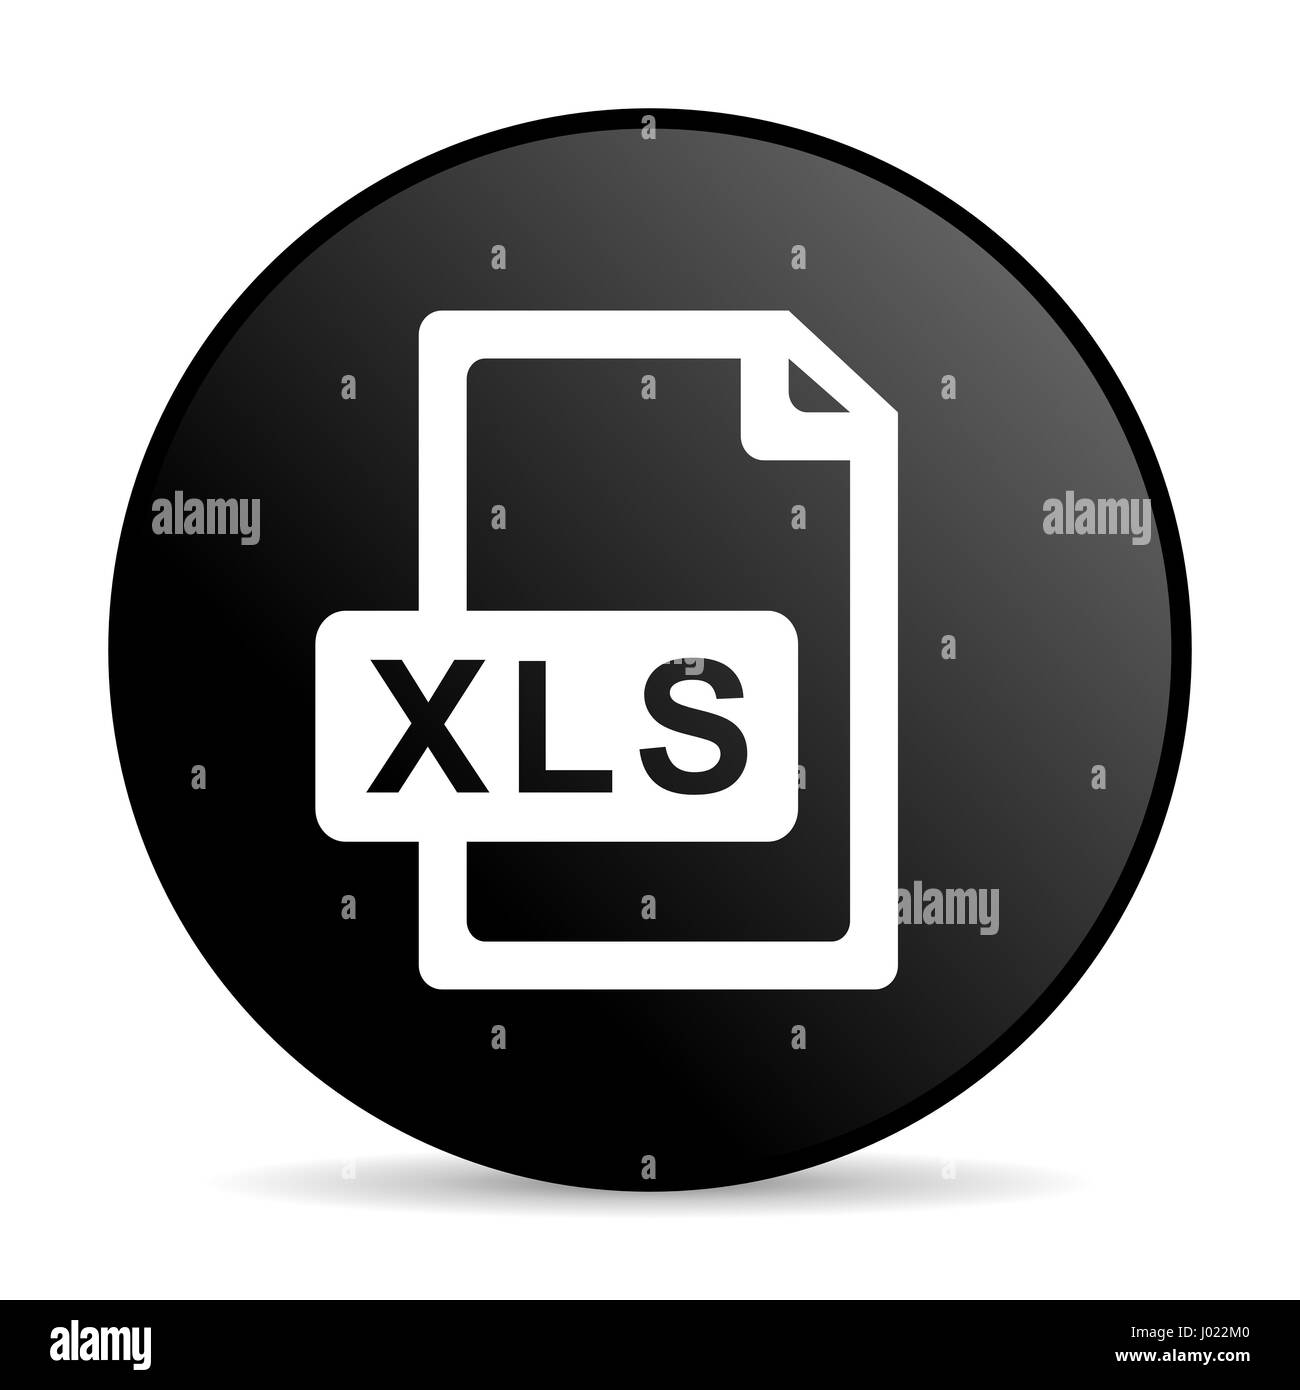 Biểu tượng XLS là biểu tượng quen thuộc của Microsoft Excel - một trong những phần mềm hữu hiệu nhất trong lĩnh vực kinh doanh. Hãy xem hình ảnh để hiểu rõ hơn về biểu tượng này và sử dụng chúng trong công việc của bạn.